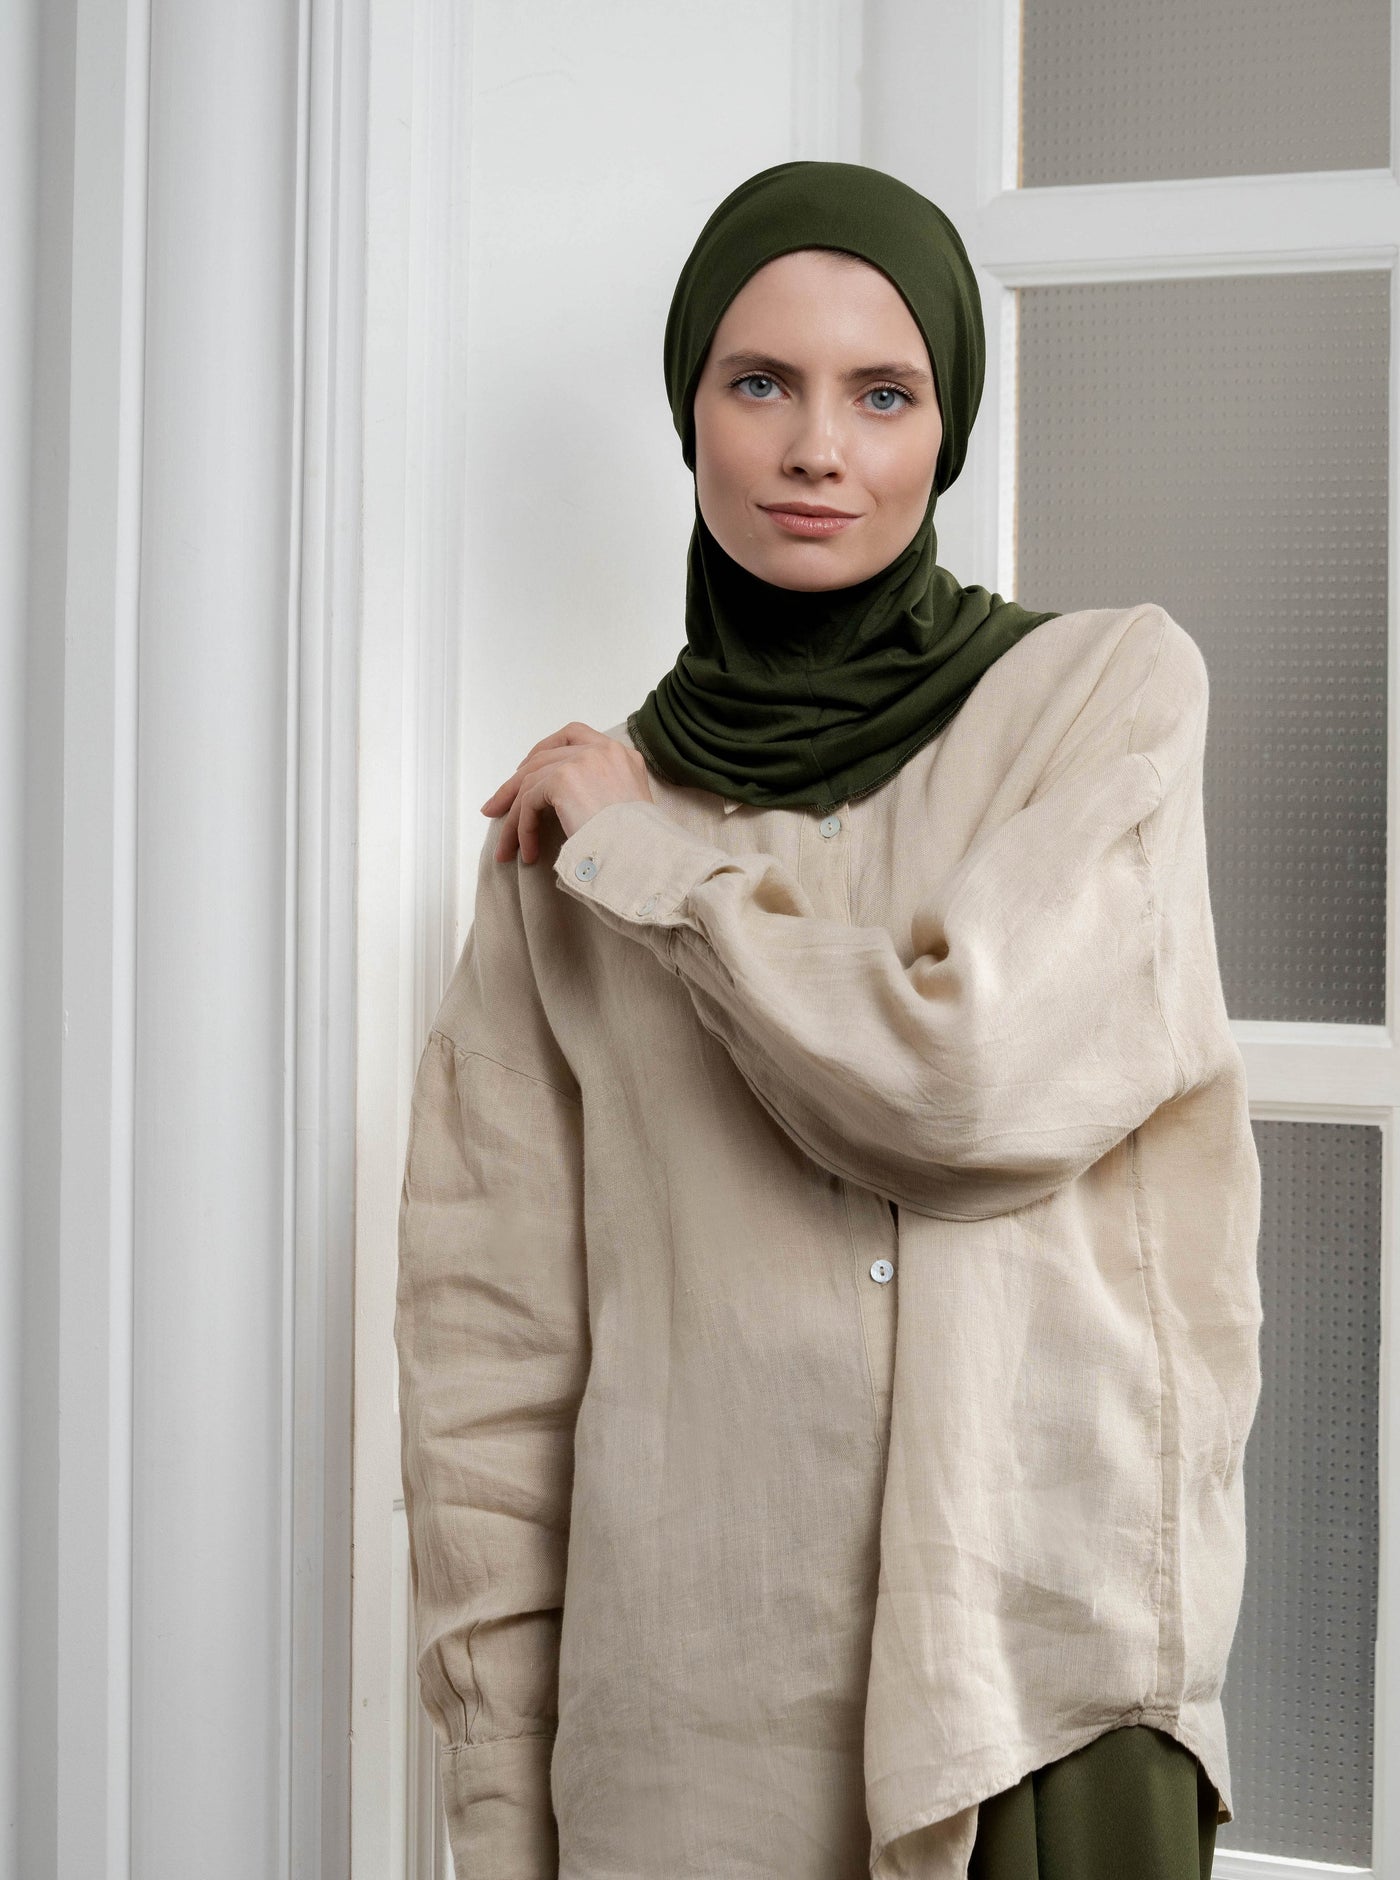 3in1 praktischer Hijab - armeegrün